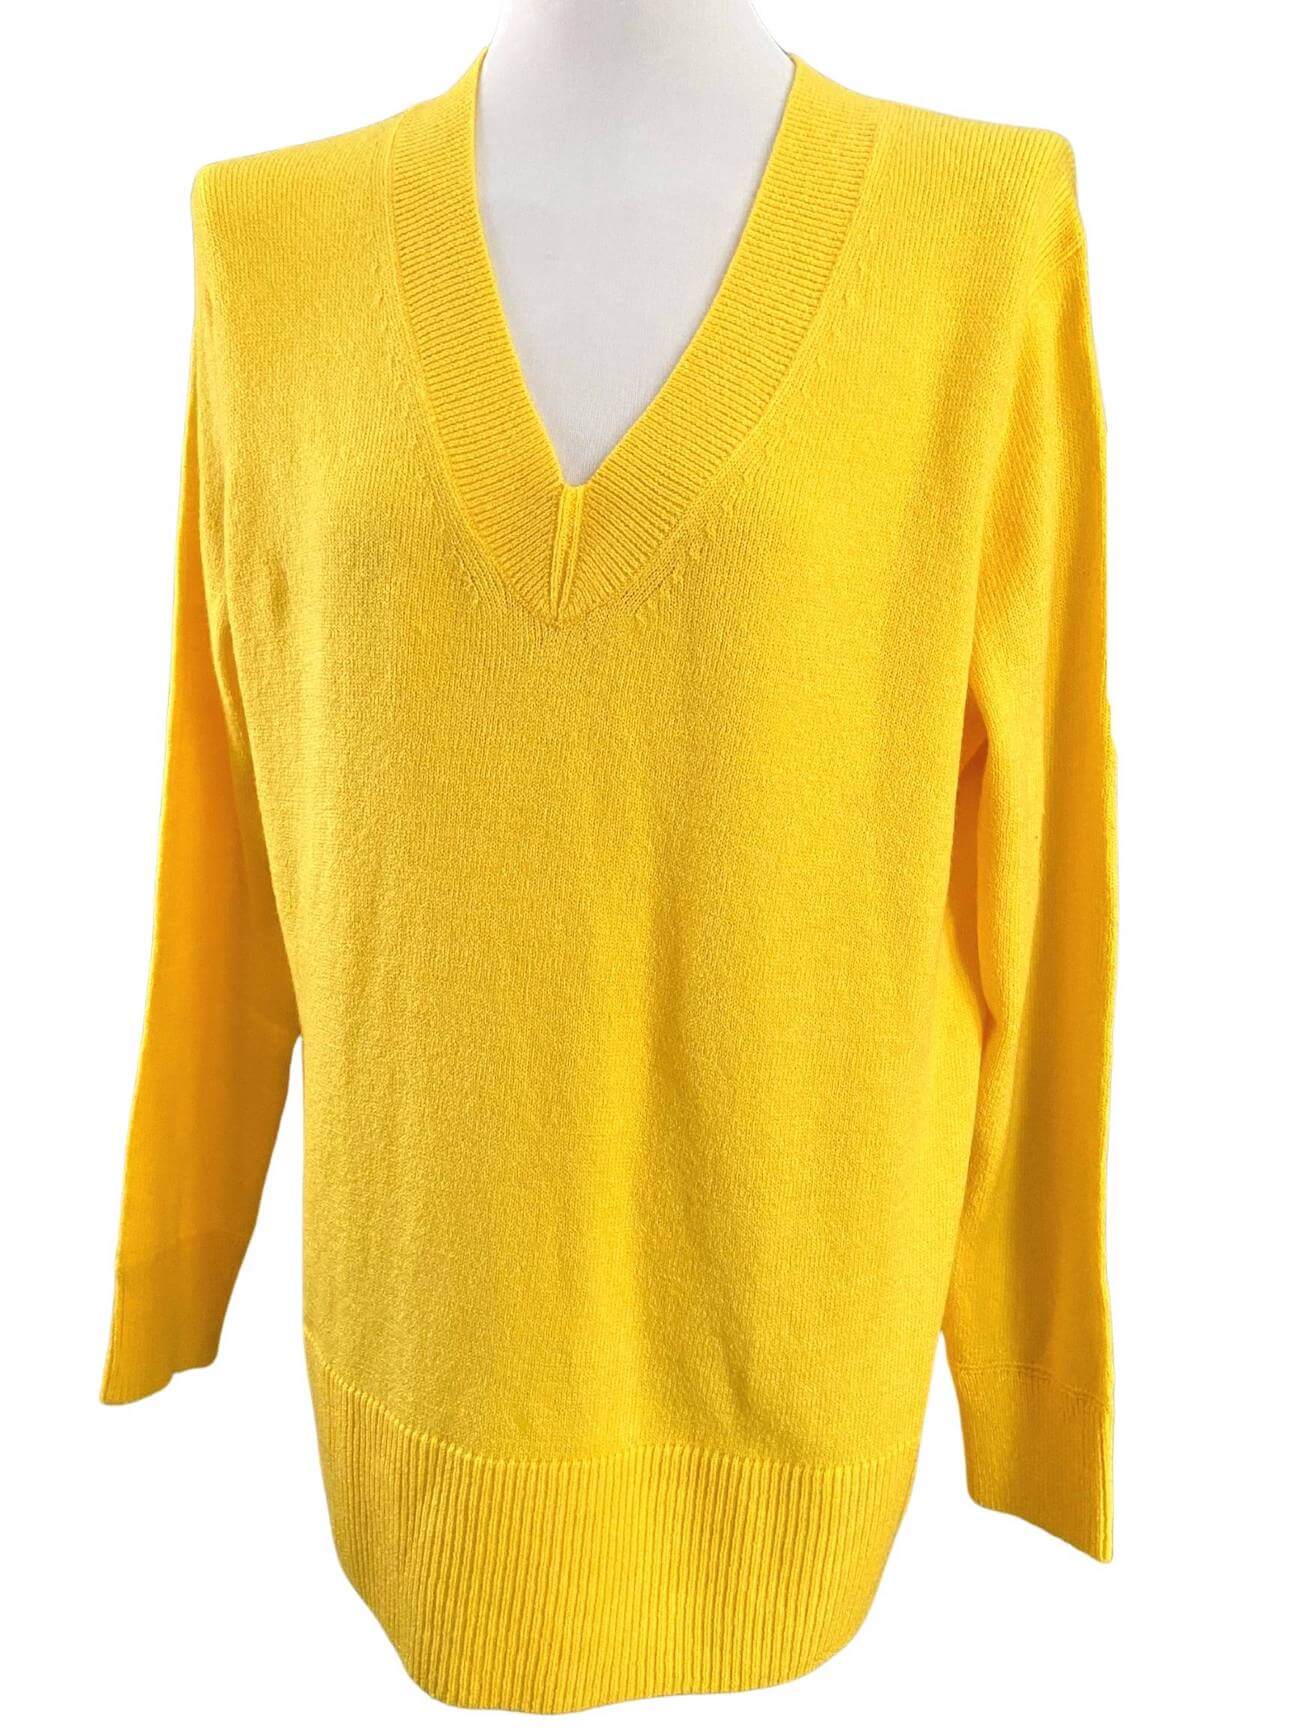 Bright Winter BANANA REPUBLIC canary yellow v-neck sweater